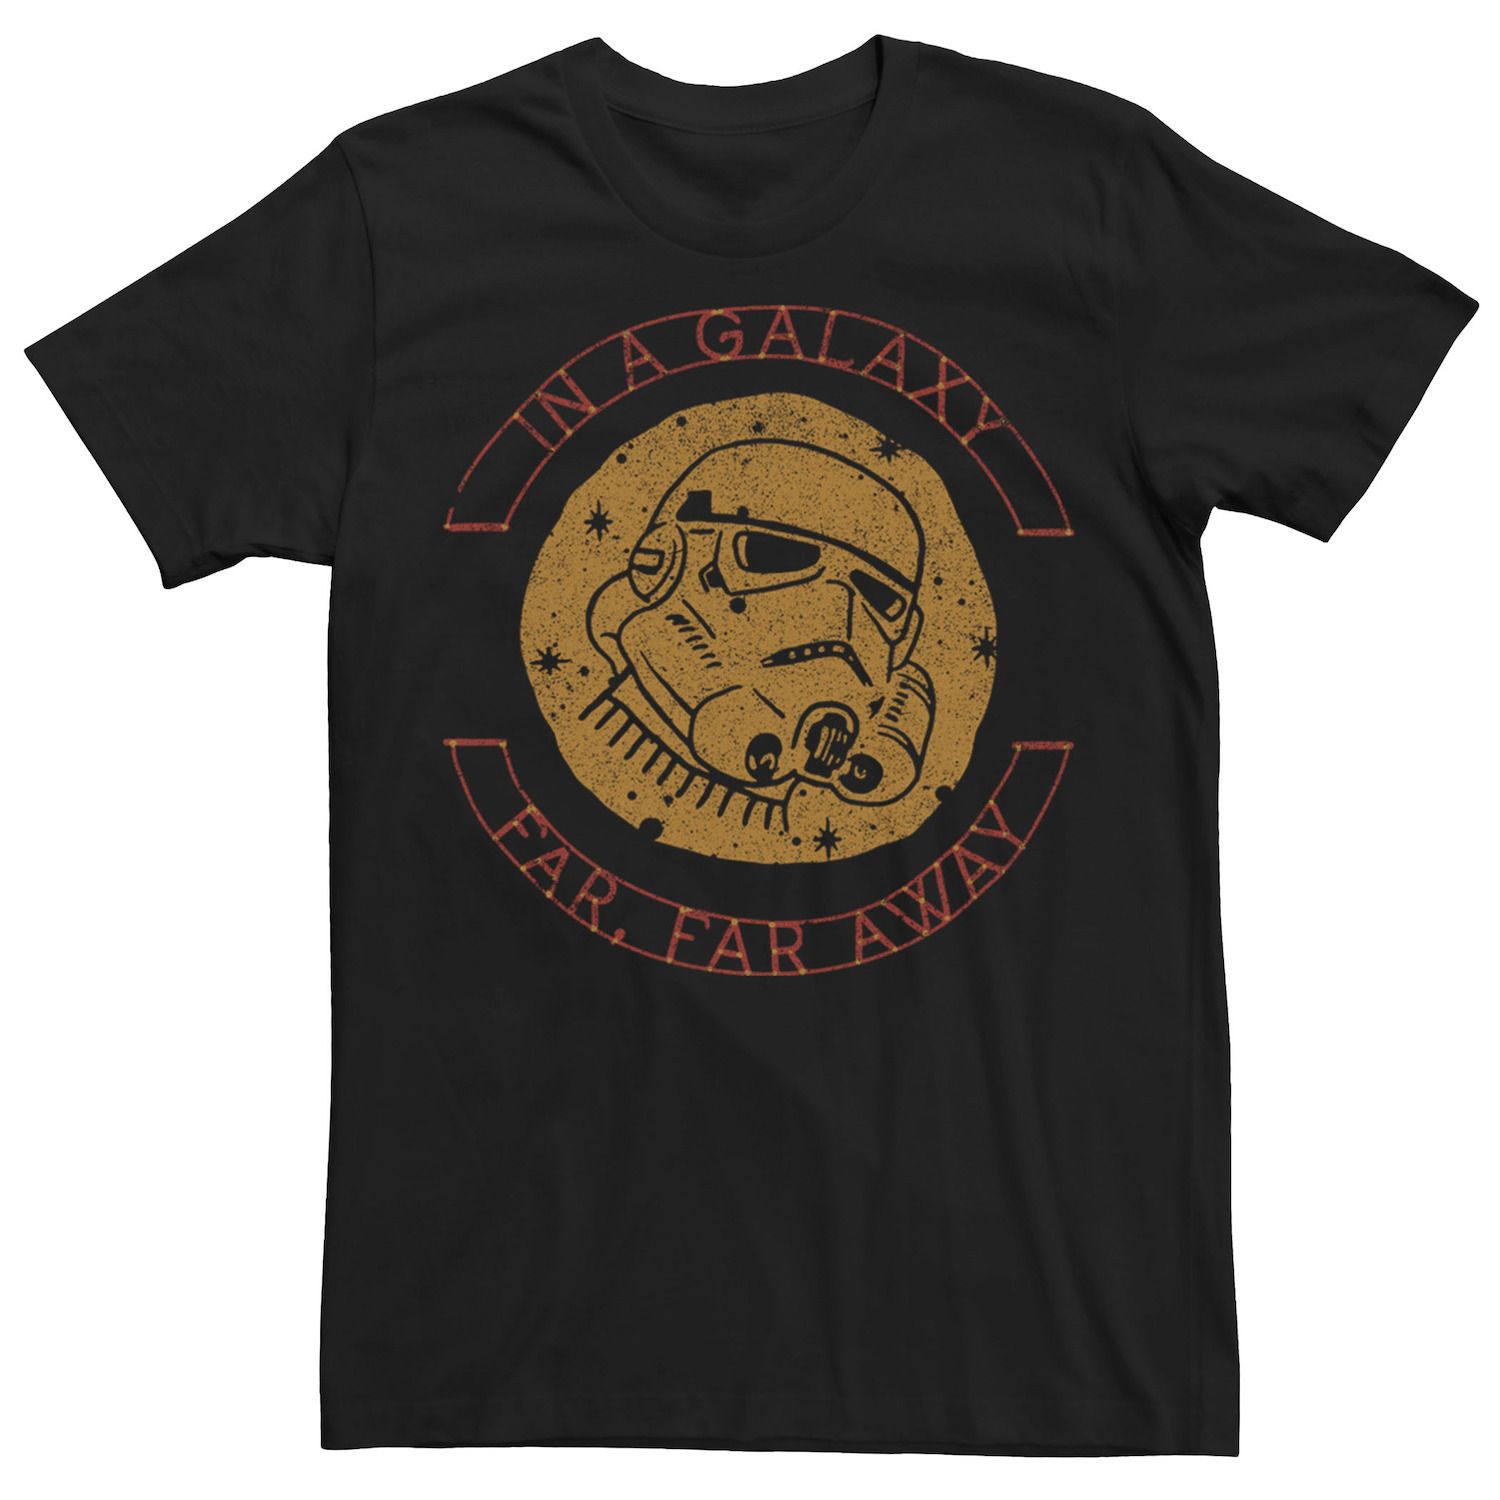 Мужская футболка с рисунком «Звездные войны: Далеко-далеко» Licensed Character доля с далеко далеко